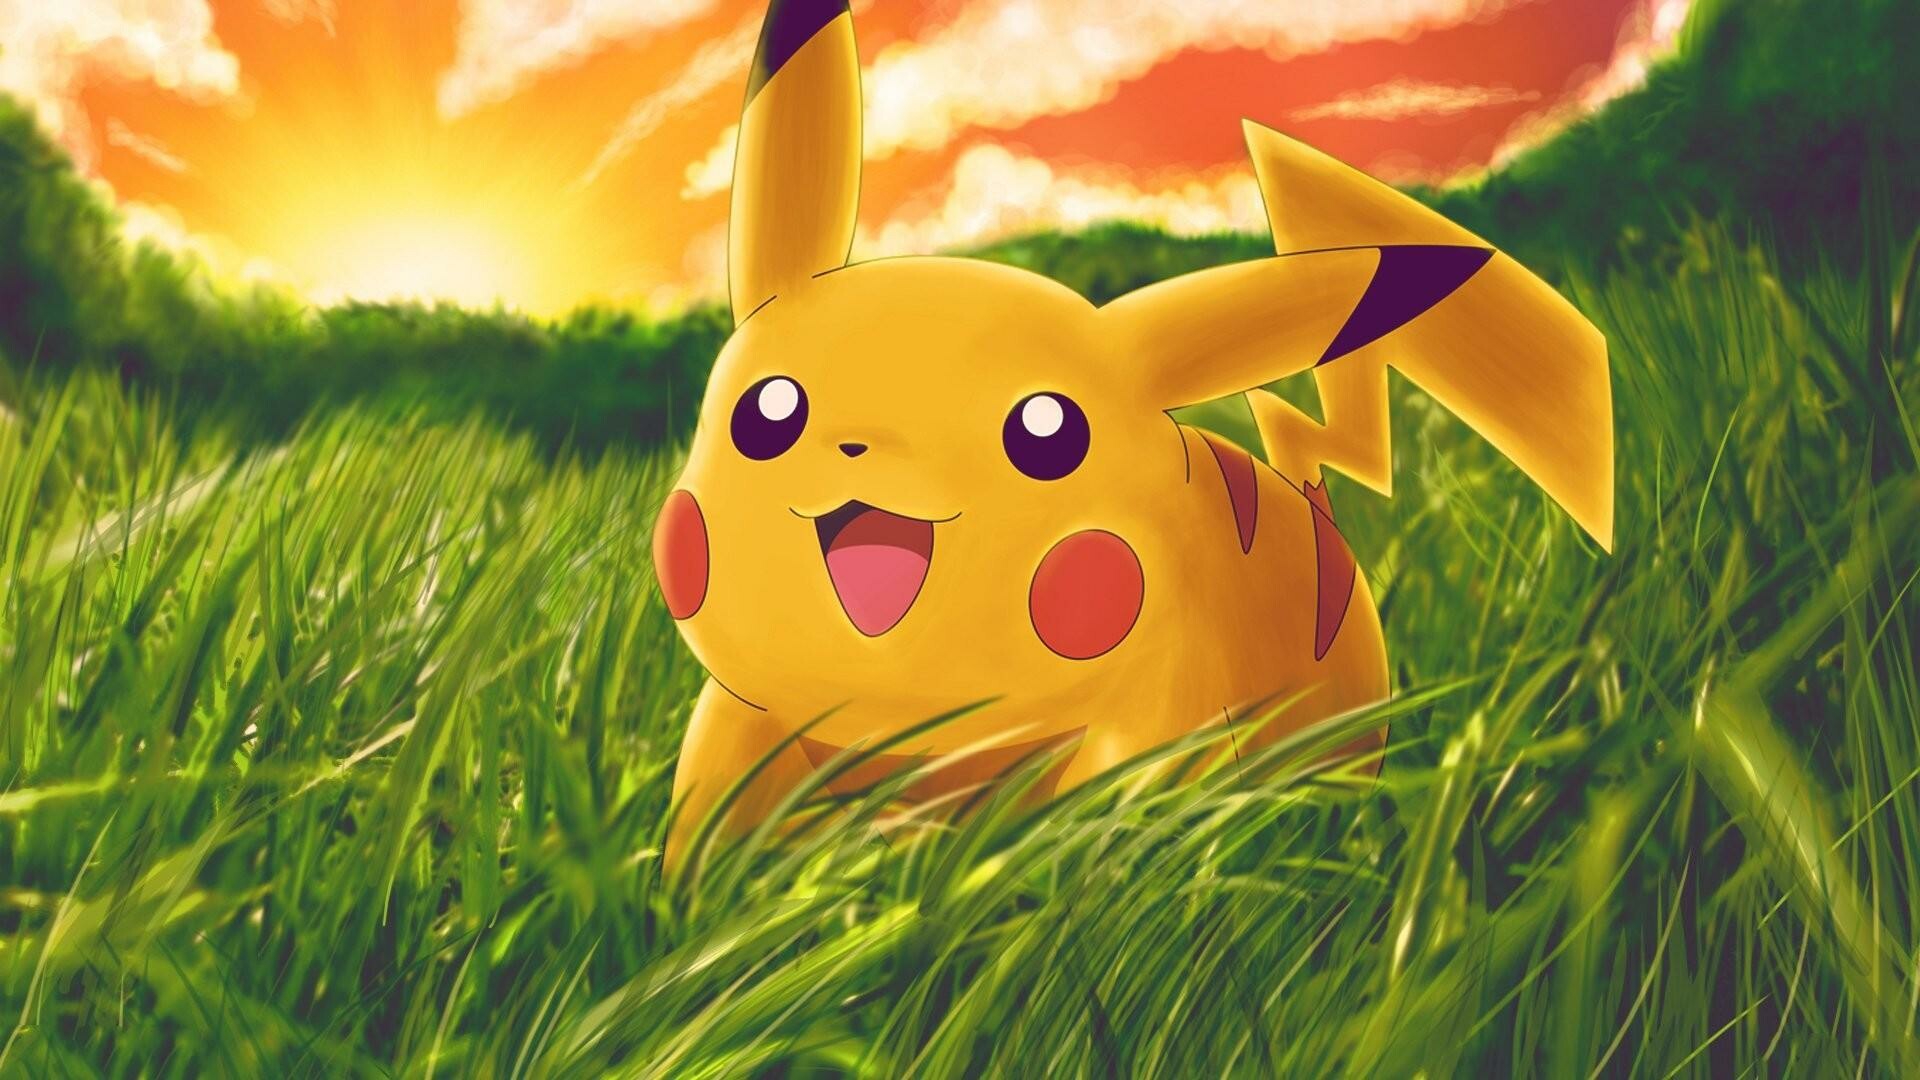 Pokemon (Anime): Pikachu, Yellow mouse-like creature, Franchise mascot. 1920x1080 Full HD Background.